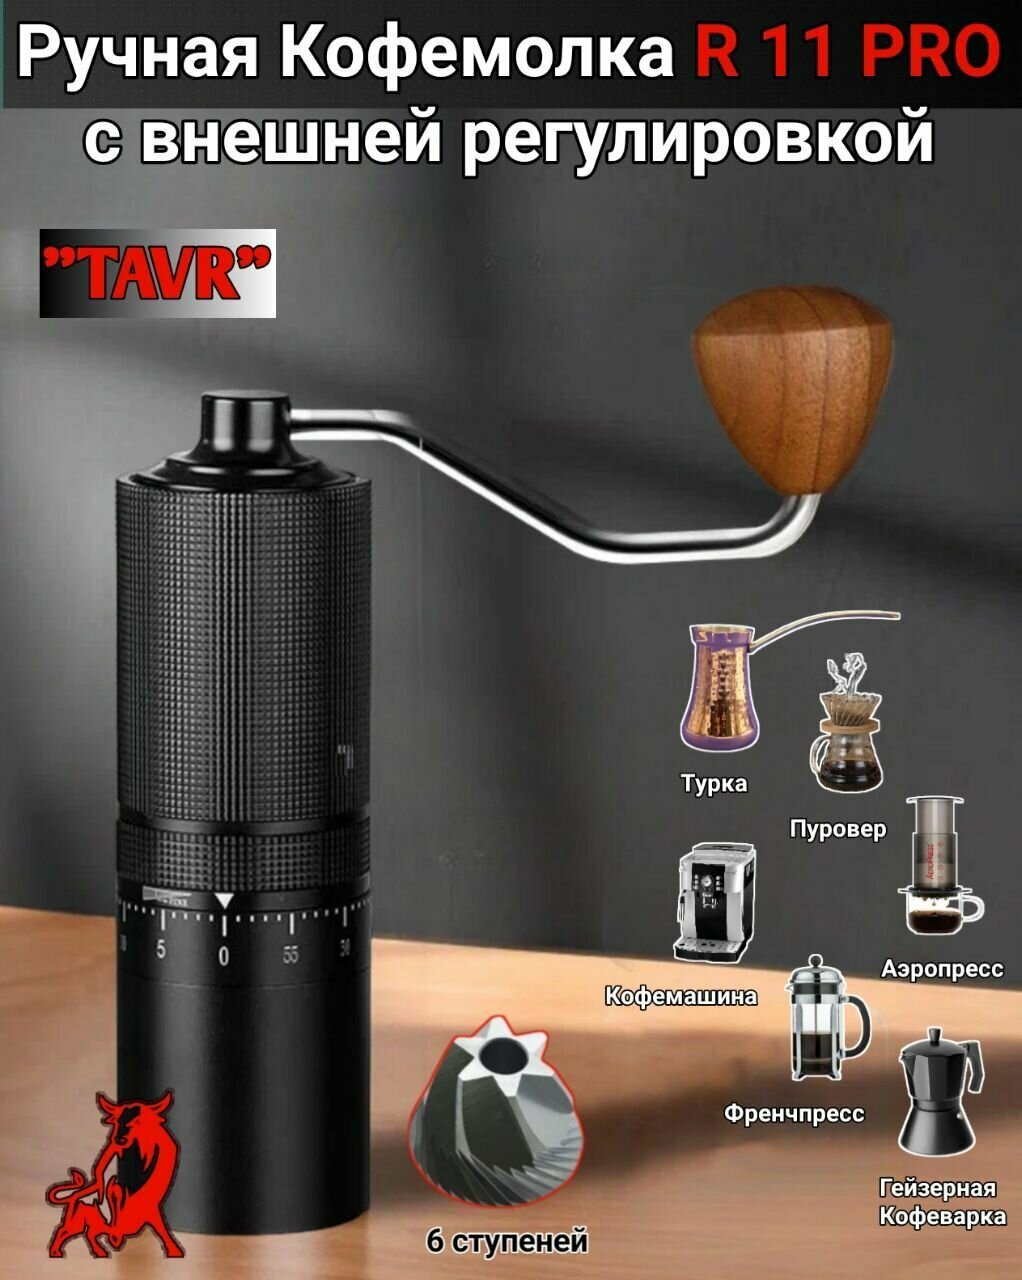 Ручная Кофемолка R11 PRO TAVR внешняя регулировка портативная кофемолка мельница для кофе